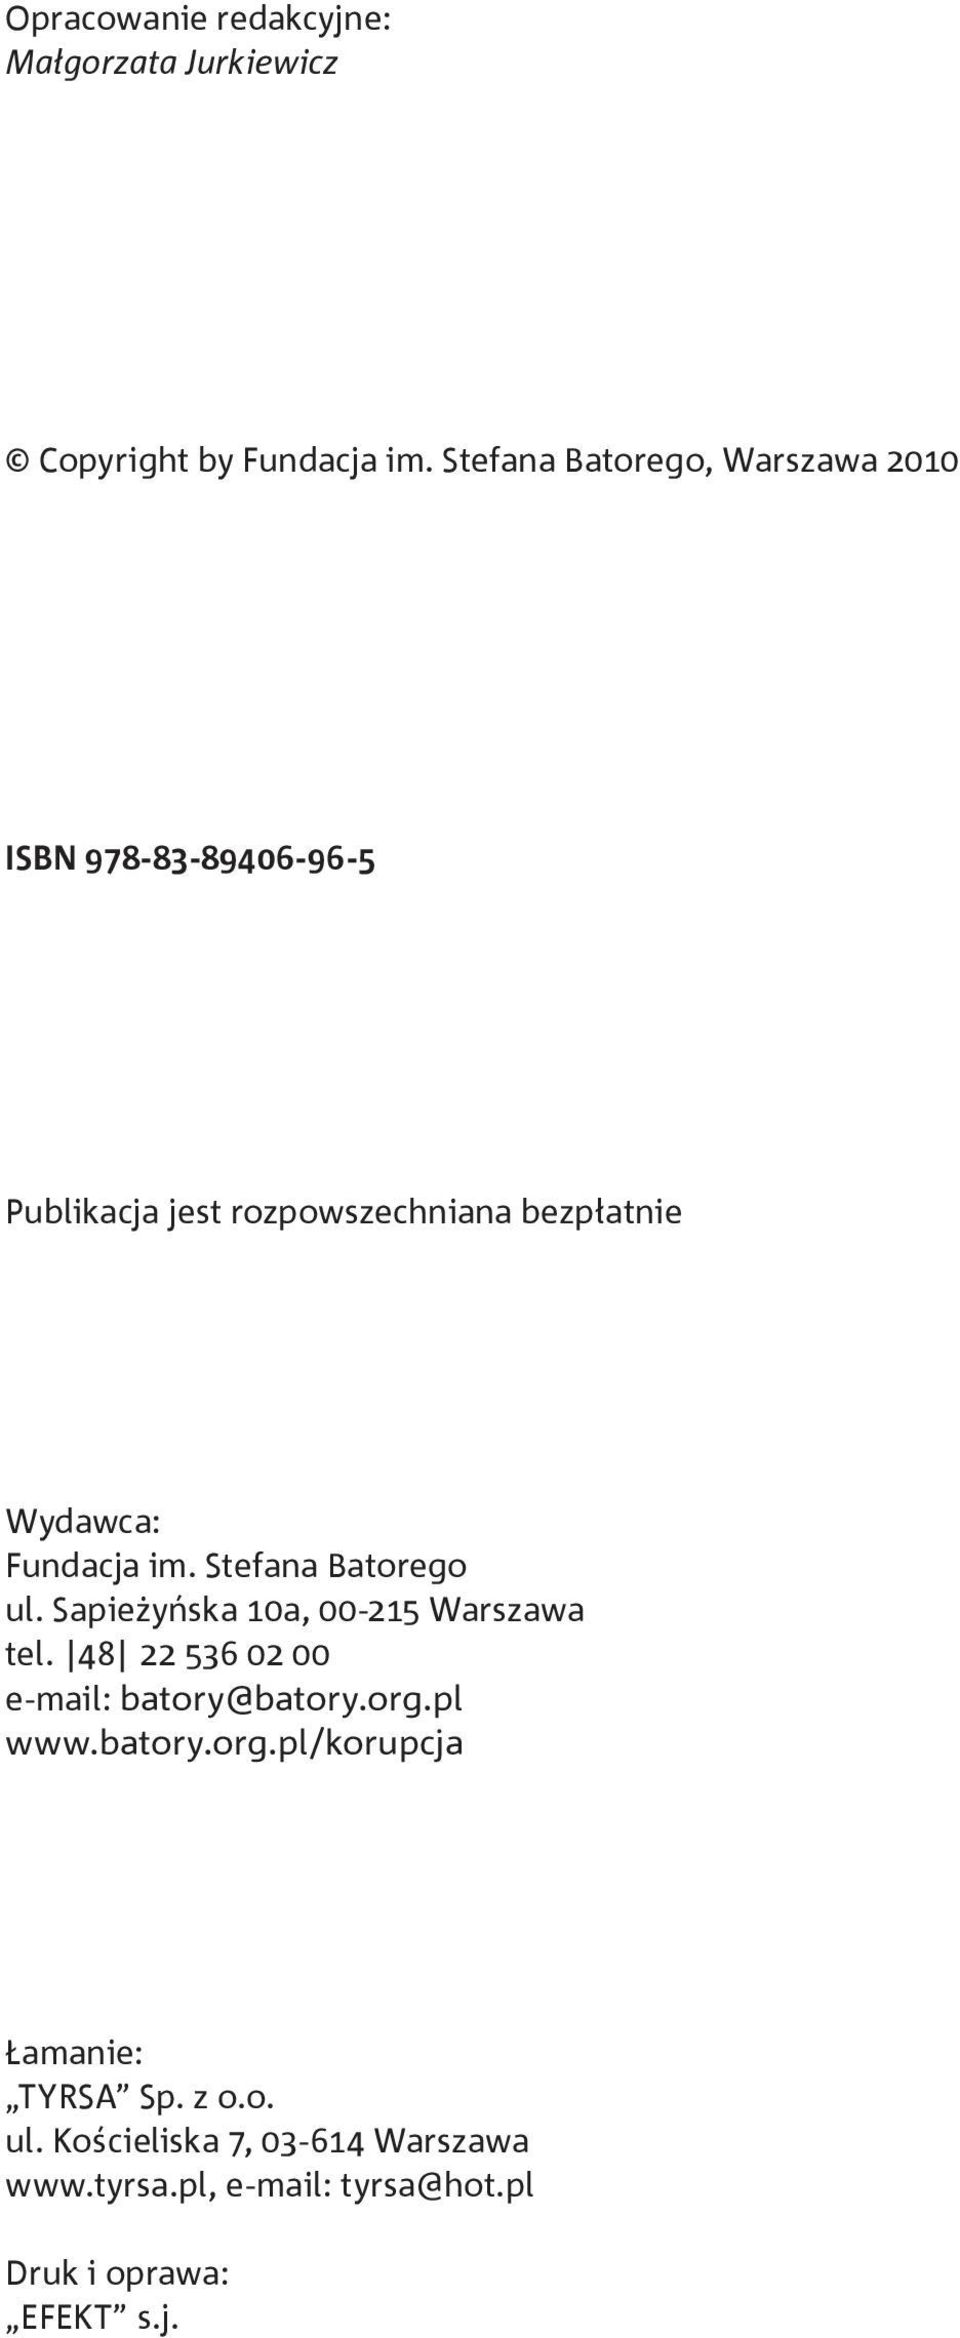 Fundacja im. Stefana Batorego ul. Sapieżyńska 10a, 00-215 Warszawa tel. 48 22 536 02 00 e-mail: batory@batory.